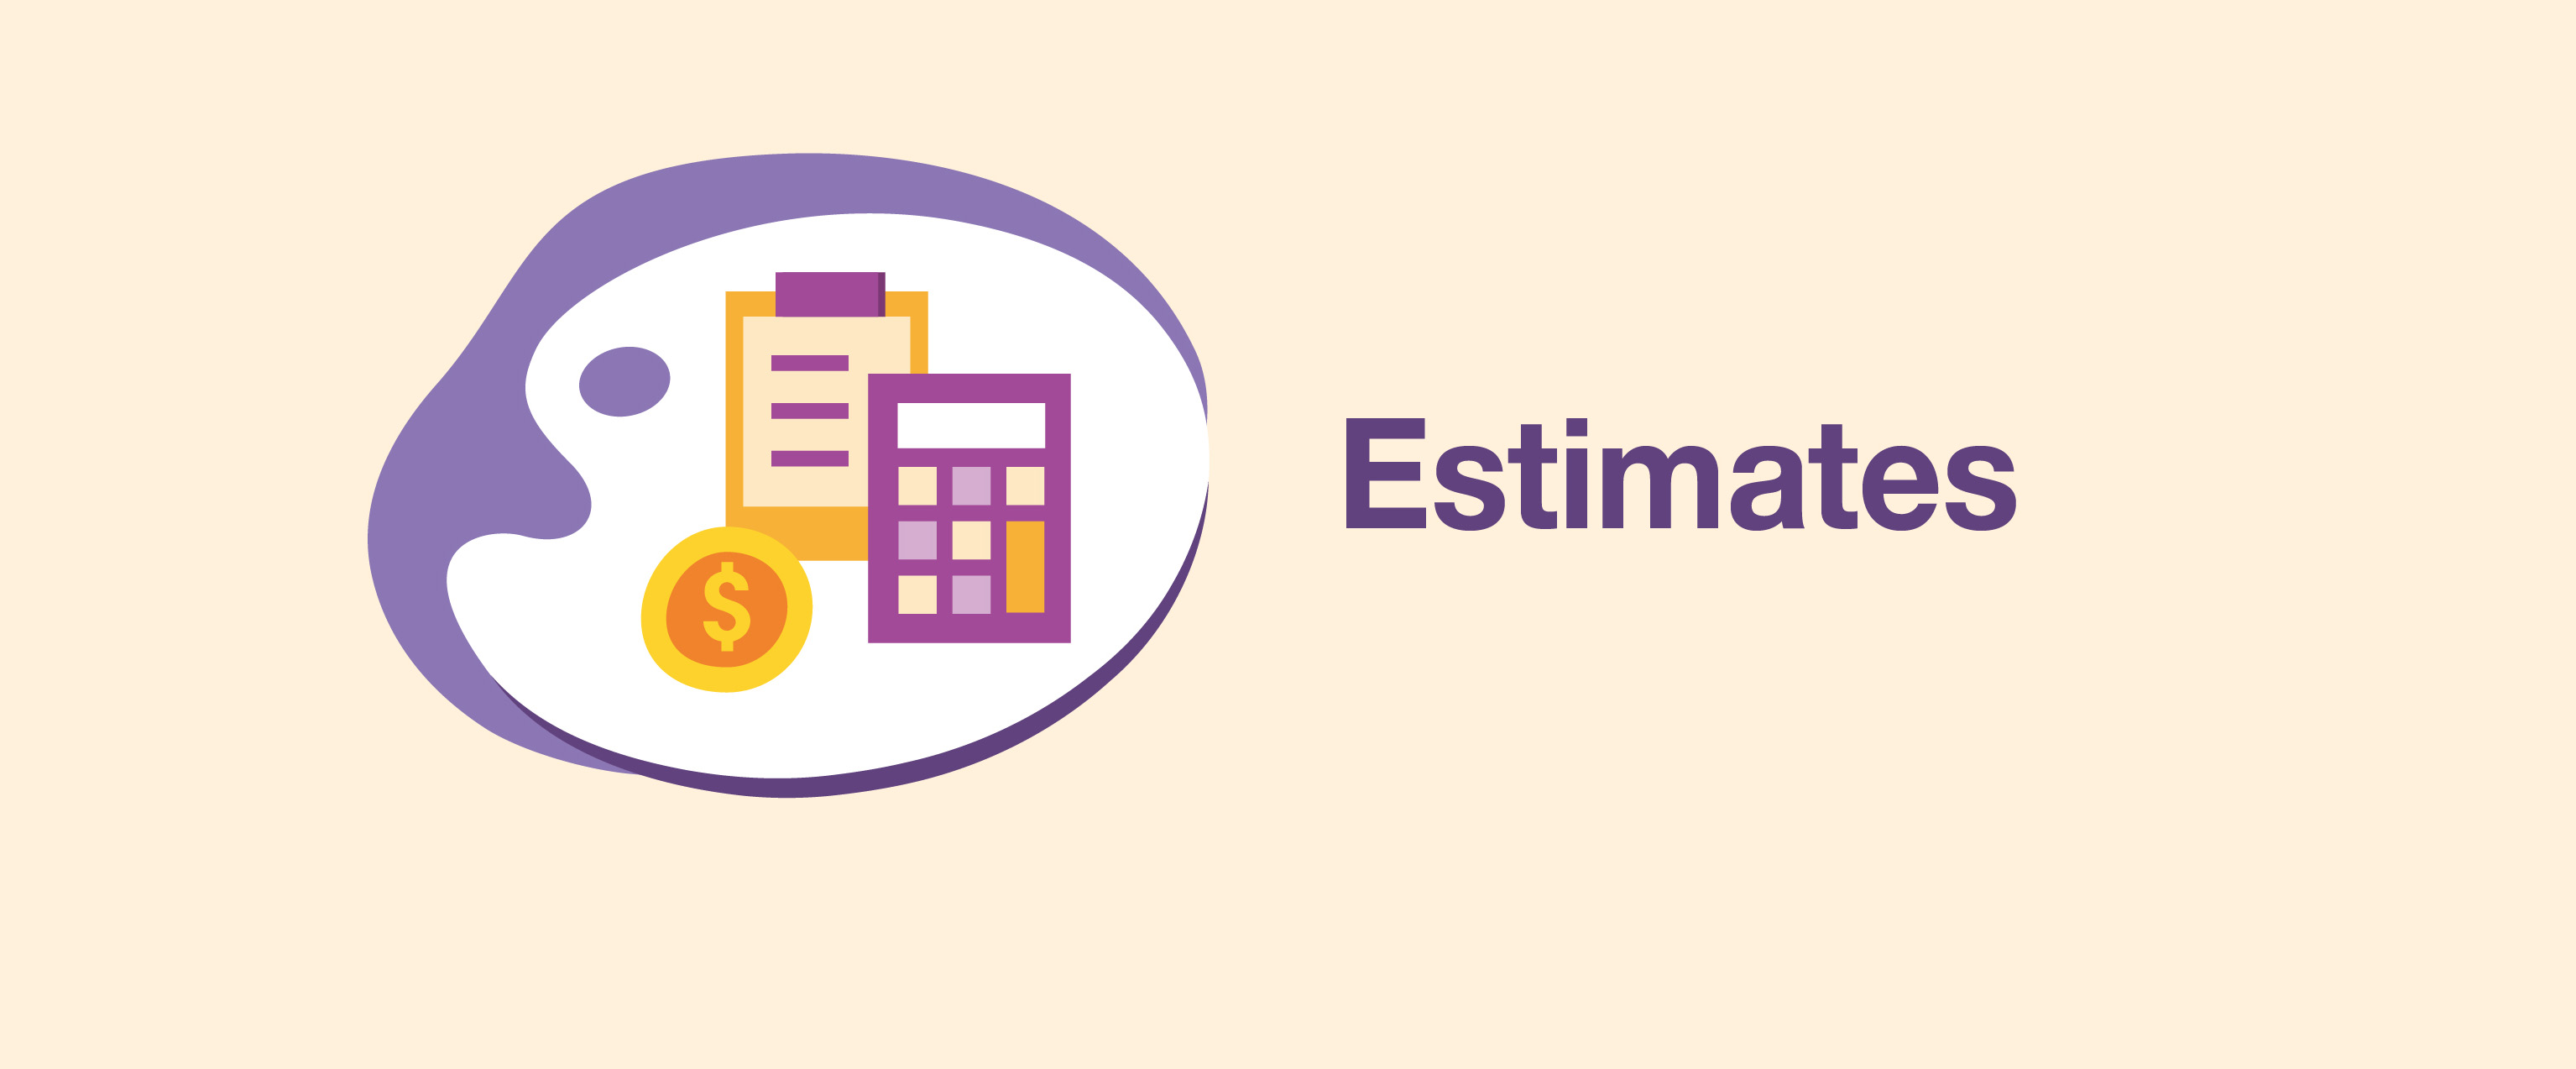 Estimates